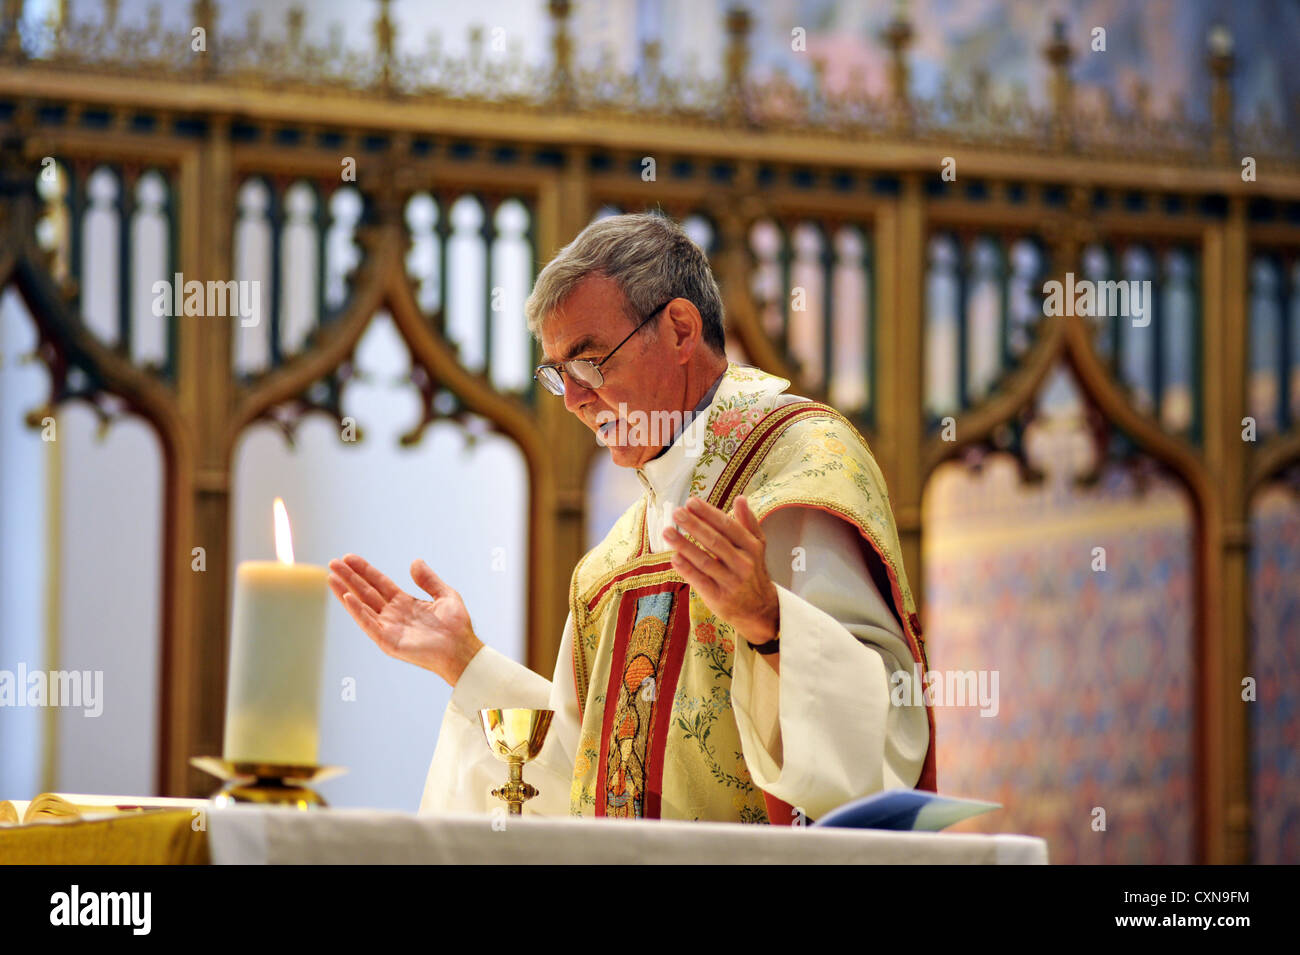 Katholische Priester bei einer Hochzeit Masse, Lancashire UK Stockfoto